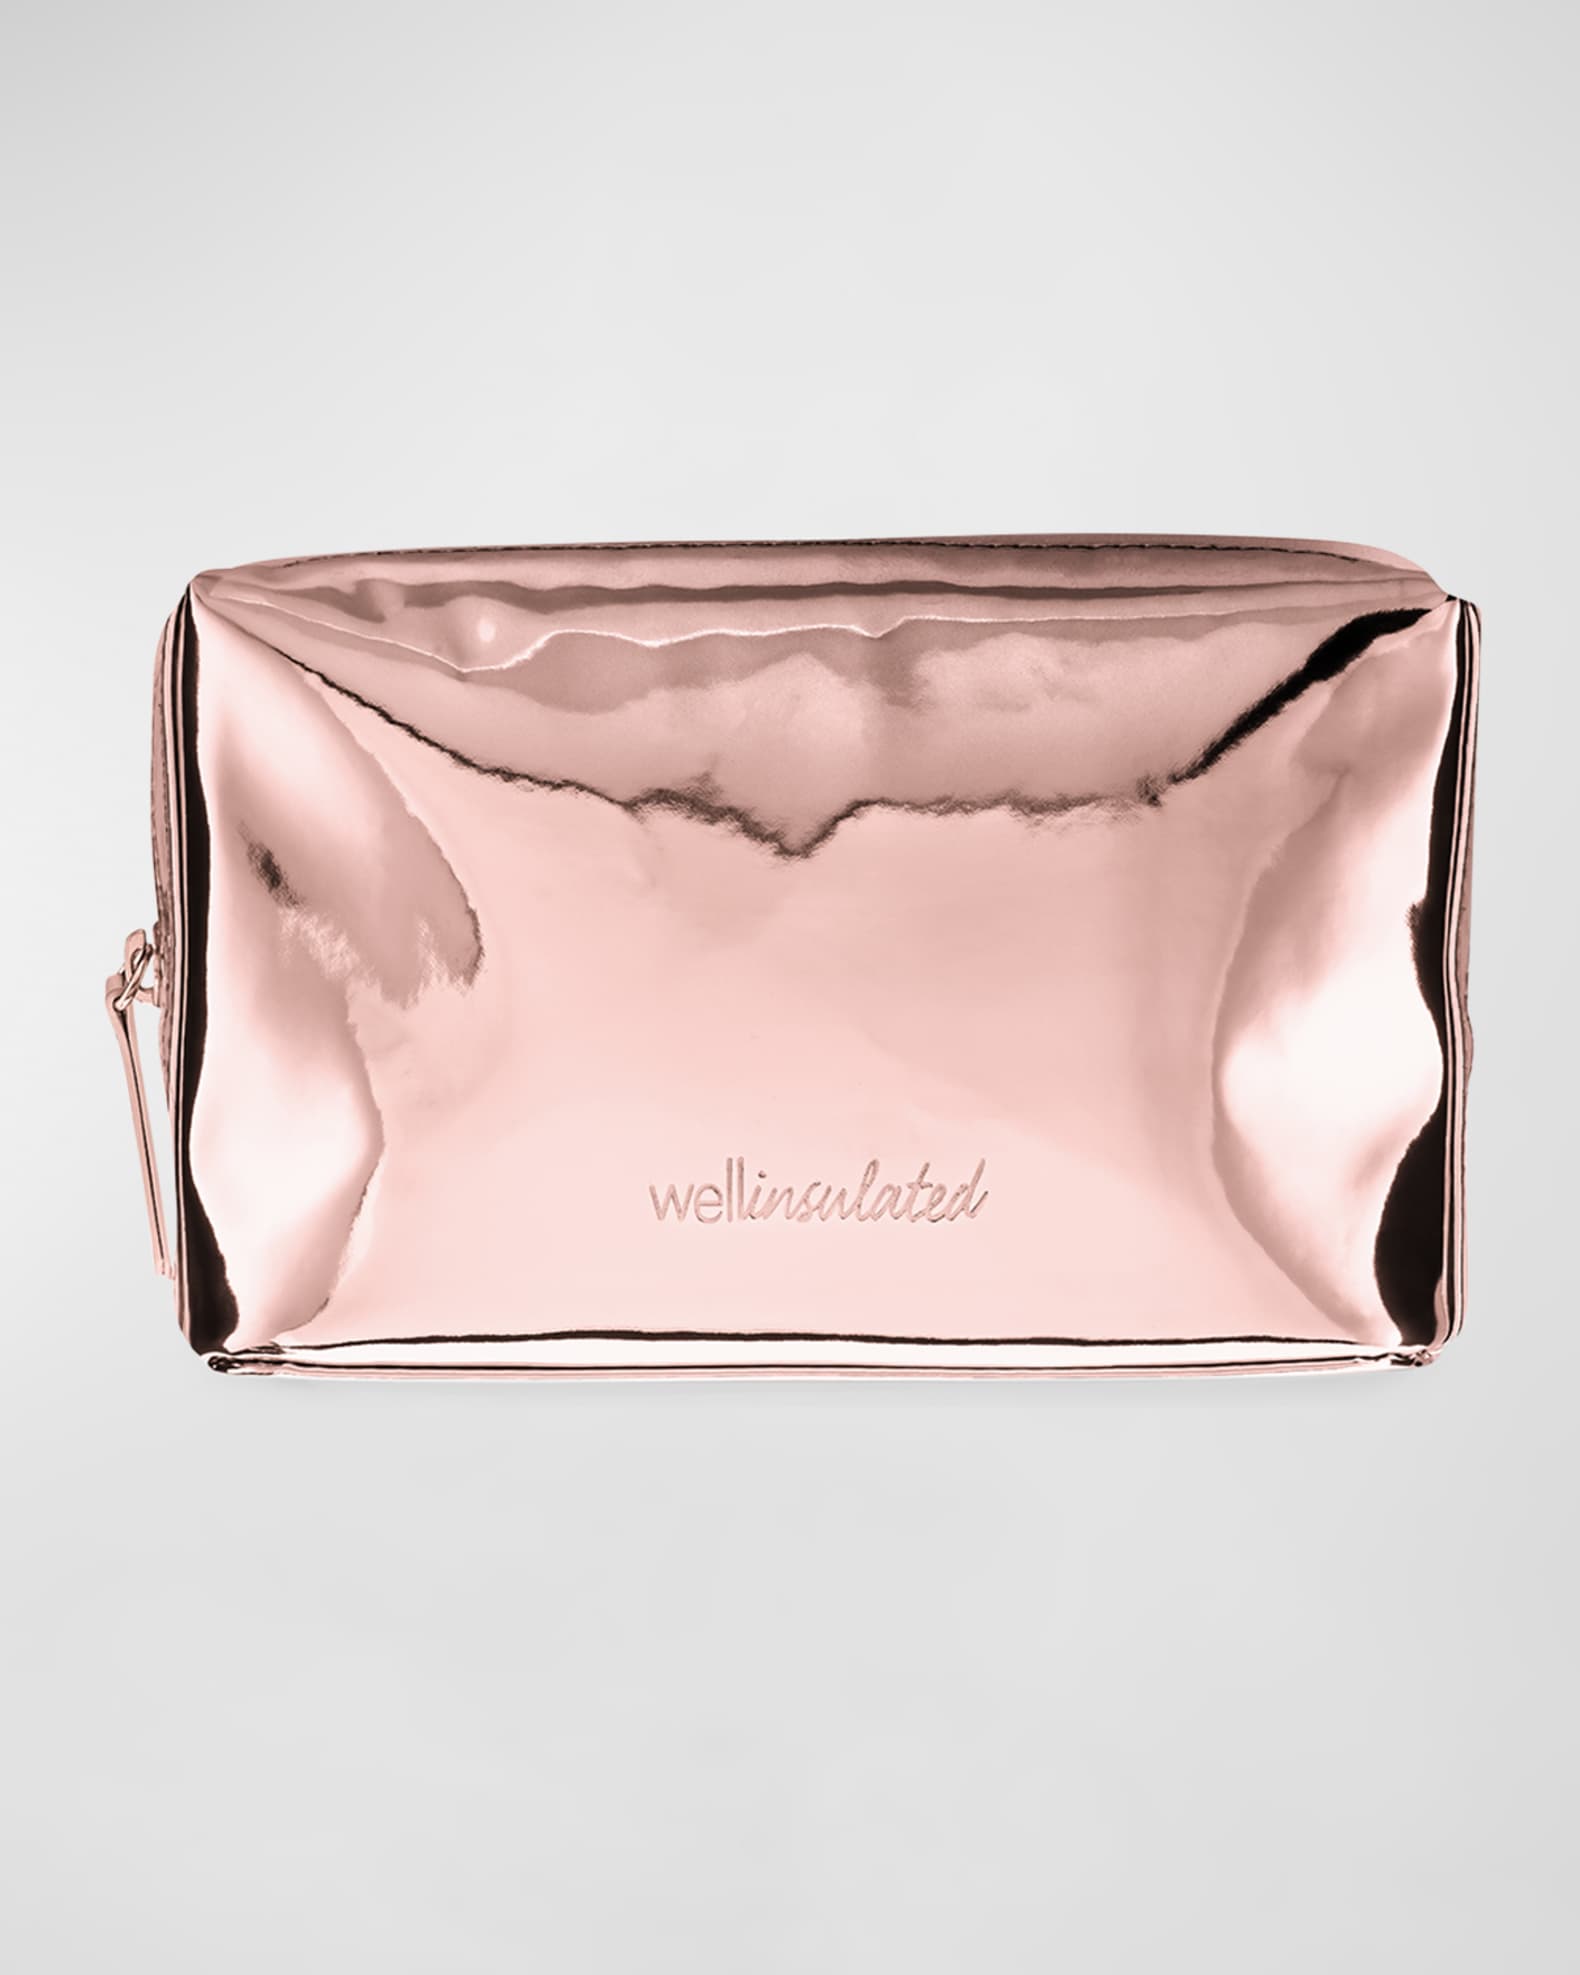 Neiman Marcus black weave gold hardware pouch makeup bag pencil case